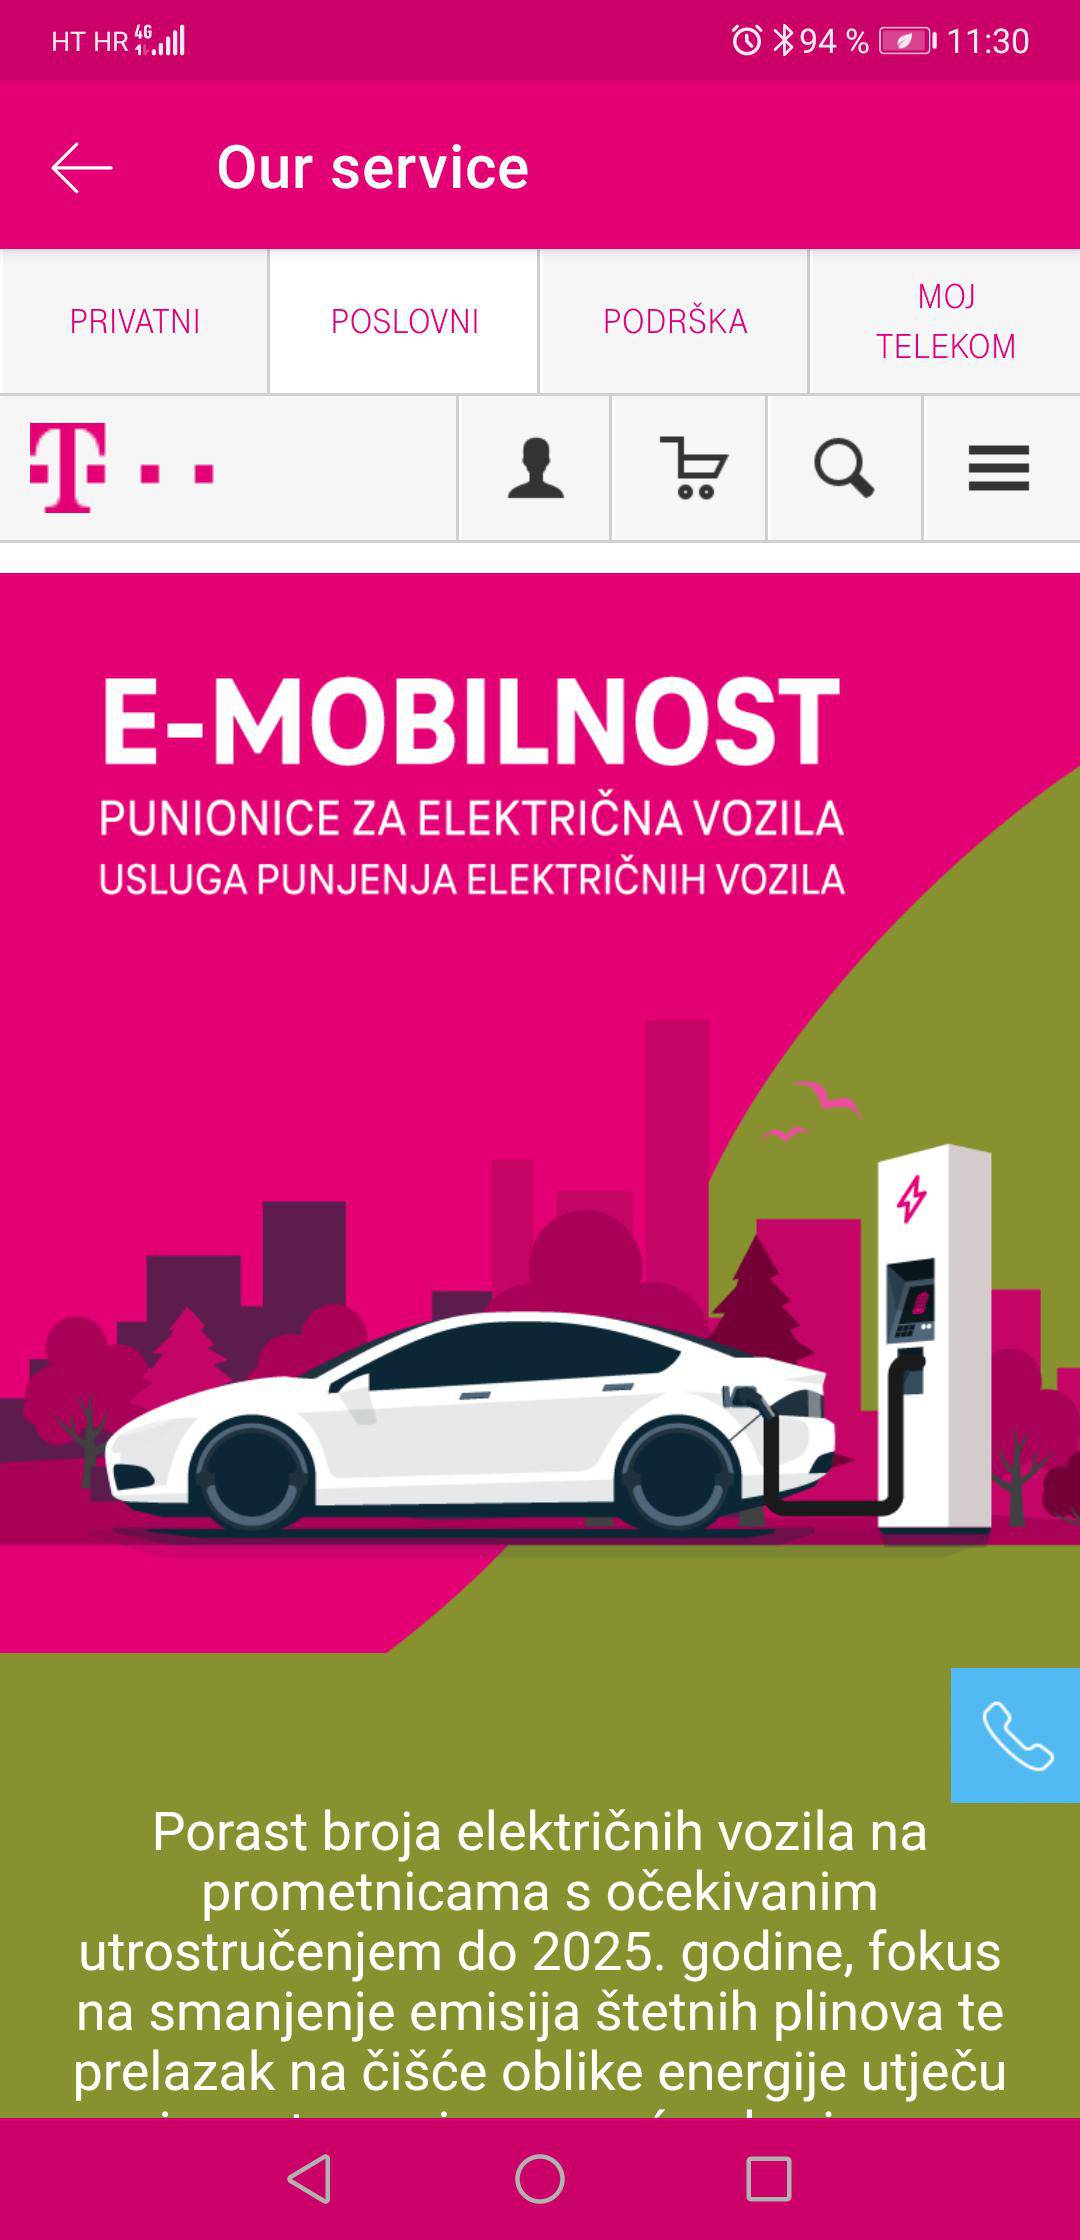 Hrvatski Telekom prvi u Hrvatskoj predstavio digitalnu uslugu punjenja električnih auta